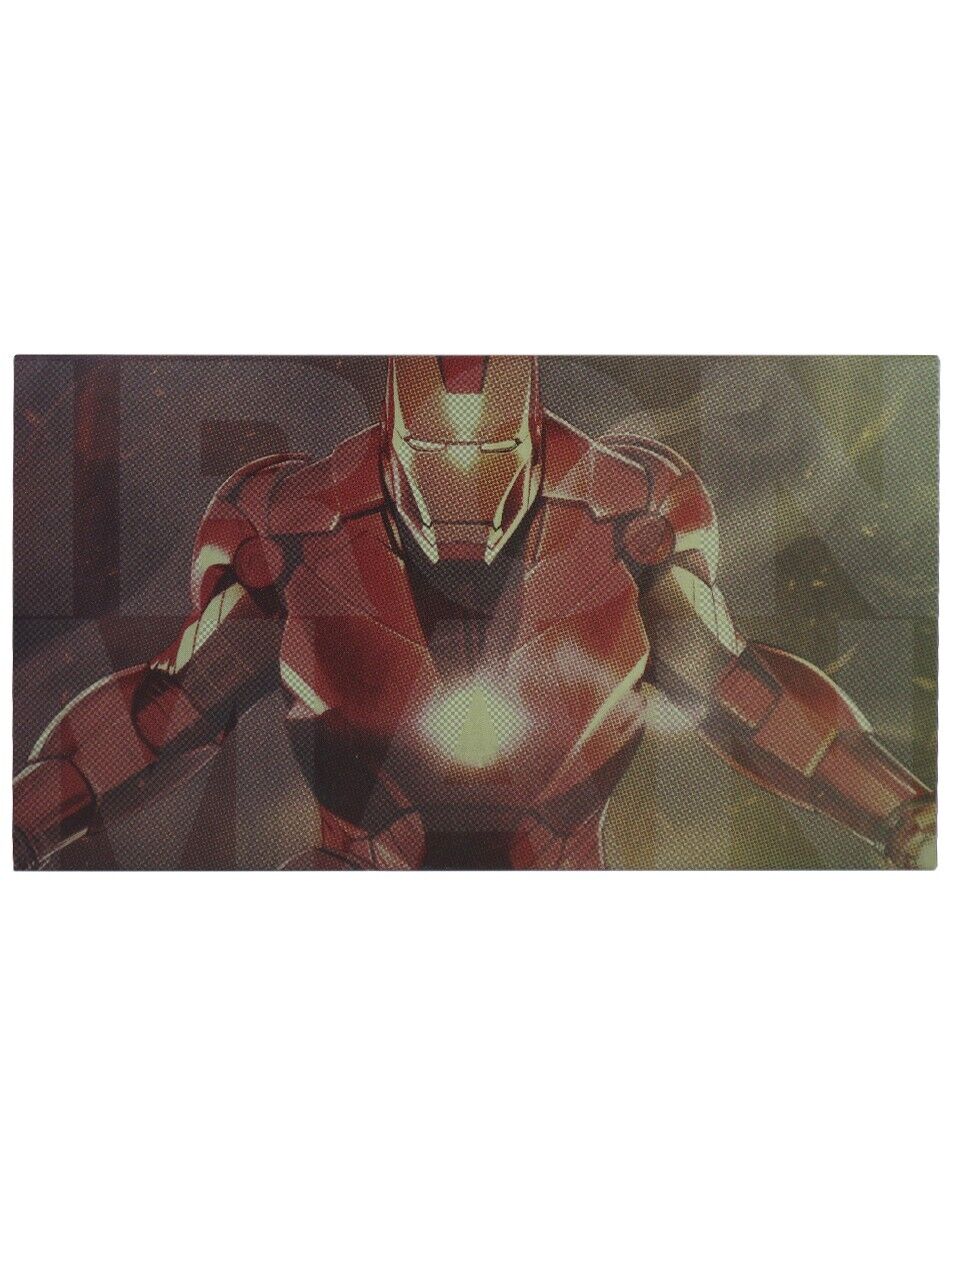 DROP + Marvel Avengers Iron Man Key Cap Set MT3 Profile Base Kit New In Box